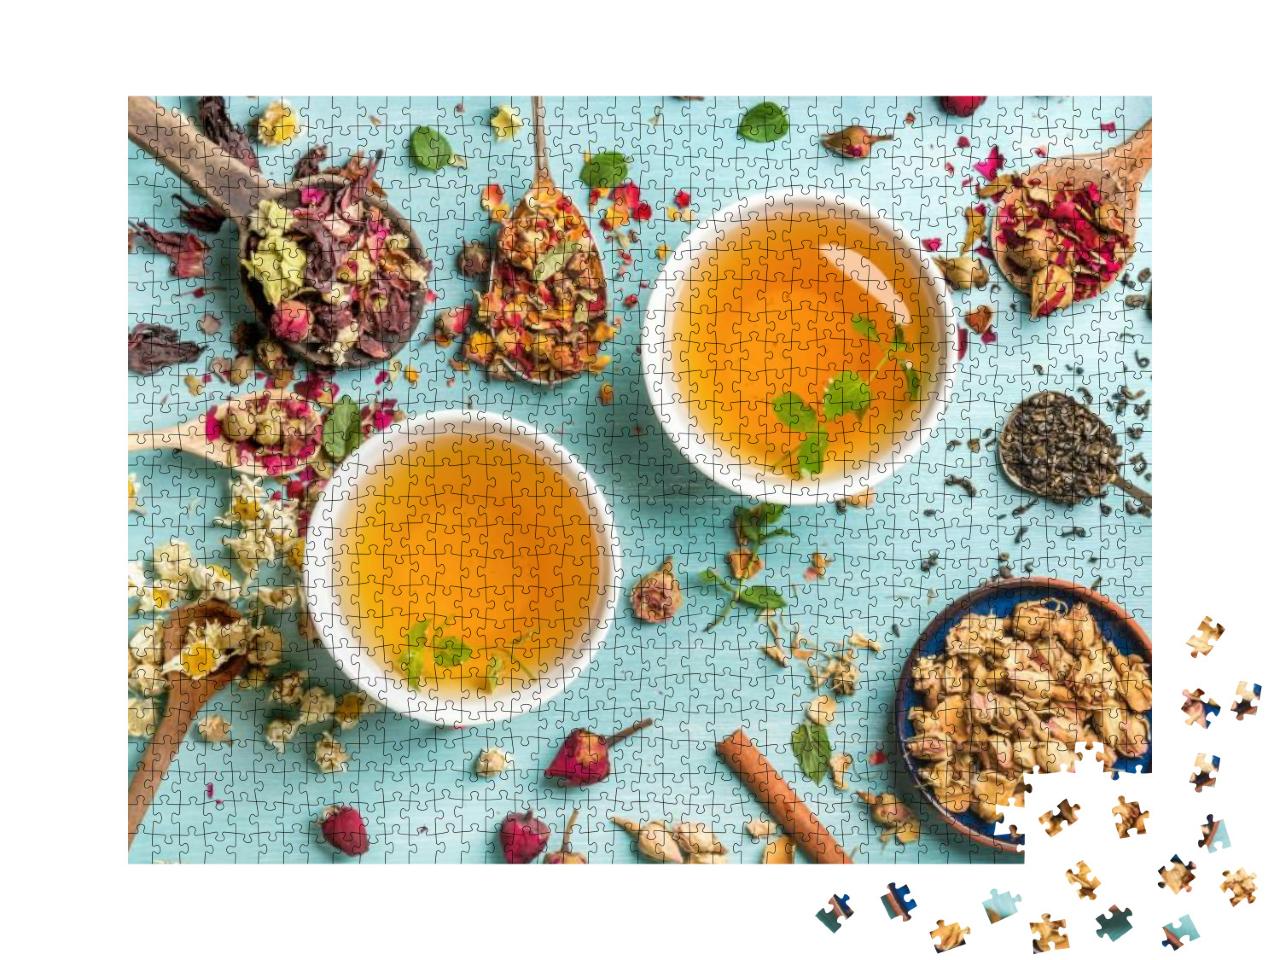 Puzzle 1000 Teile „Zwei Tassen frischer Tee aus getrockneten Kräutern“